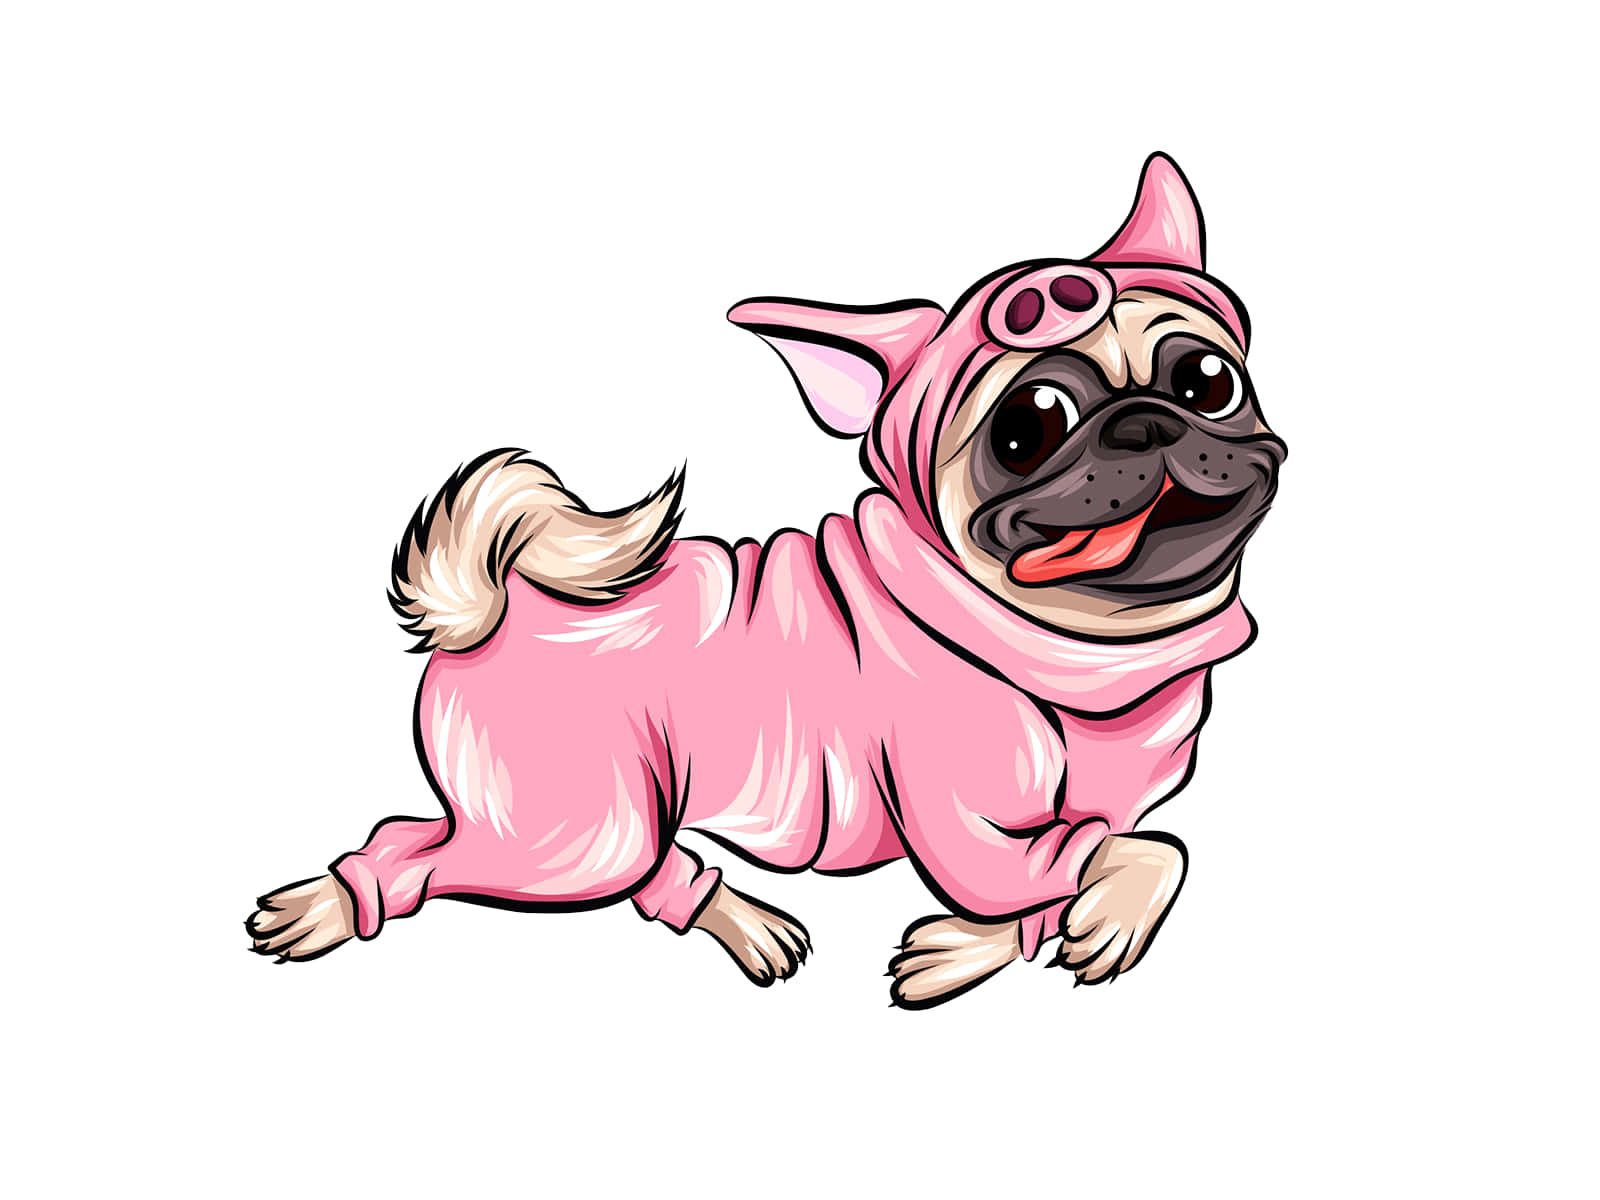 Divertidaimagen De Un Pug Disfrazado De Cerdo En Traje De Dibujos Animados.